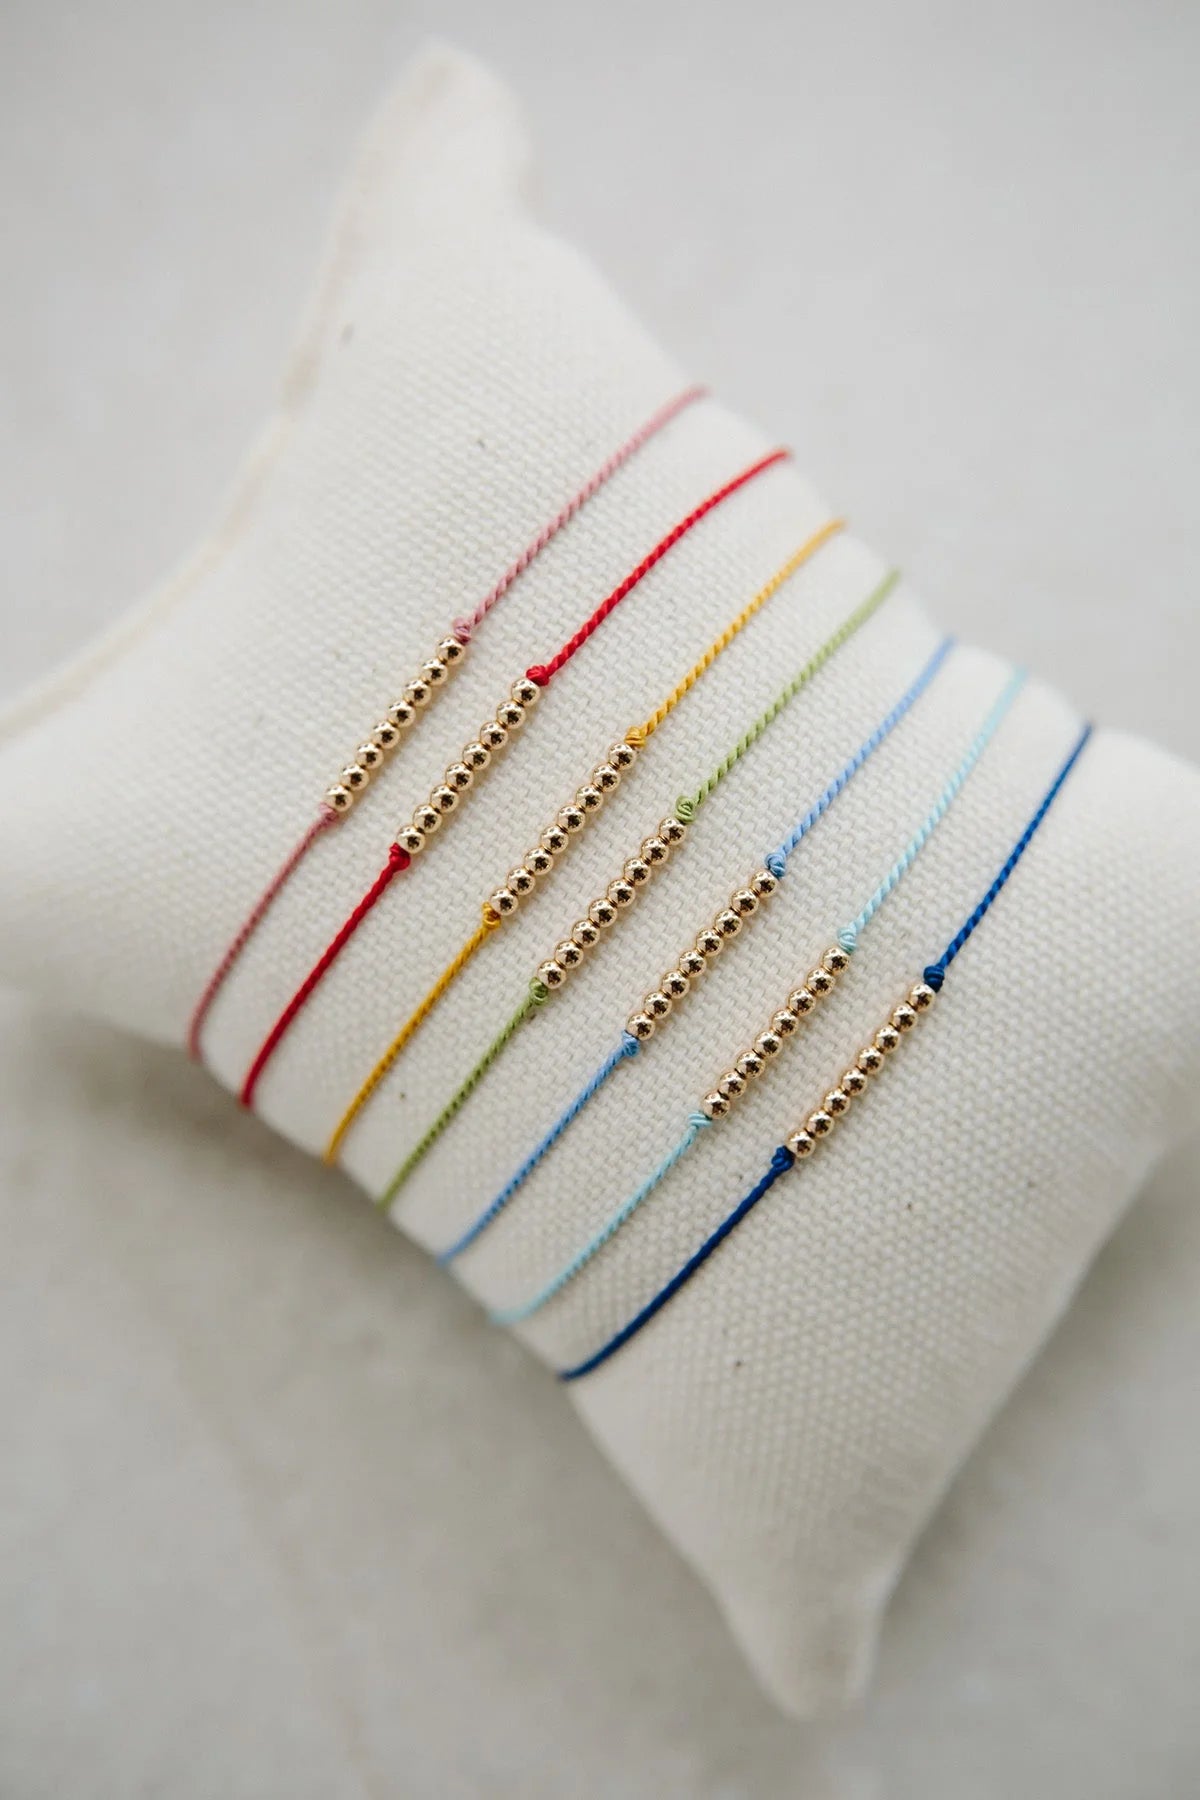 DIY INSPO: Embellished Friendship Bracelets - Why Don't You Make Me?